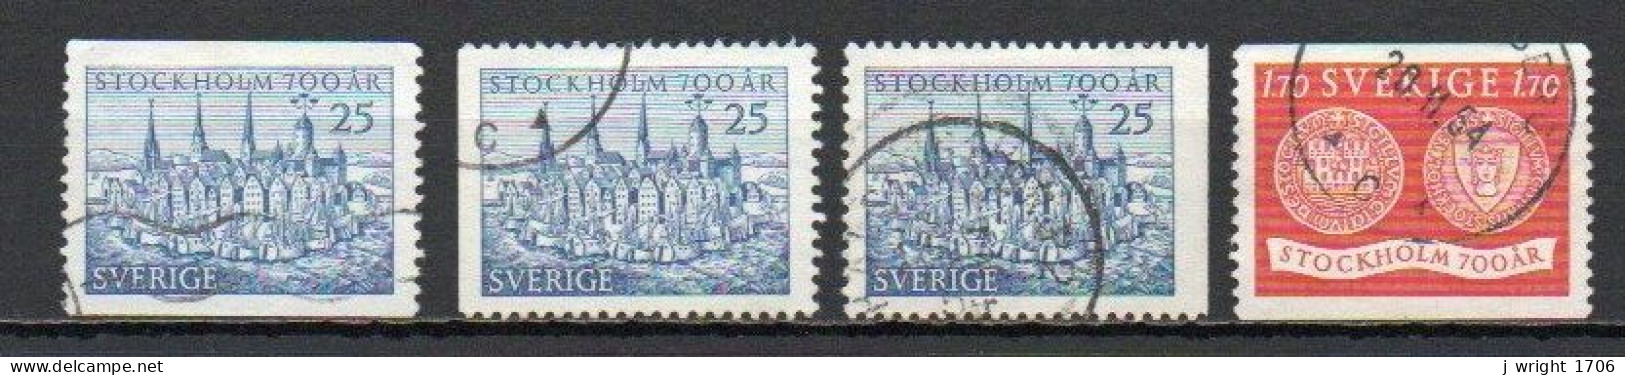 Sweden, 1953, Stockholm 700th Anniv, Set, USED - Usados